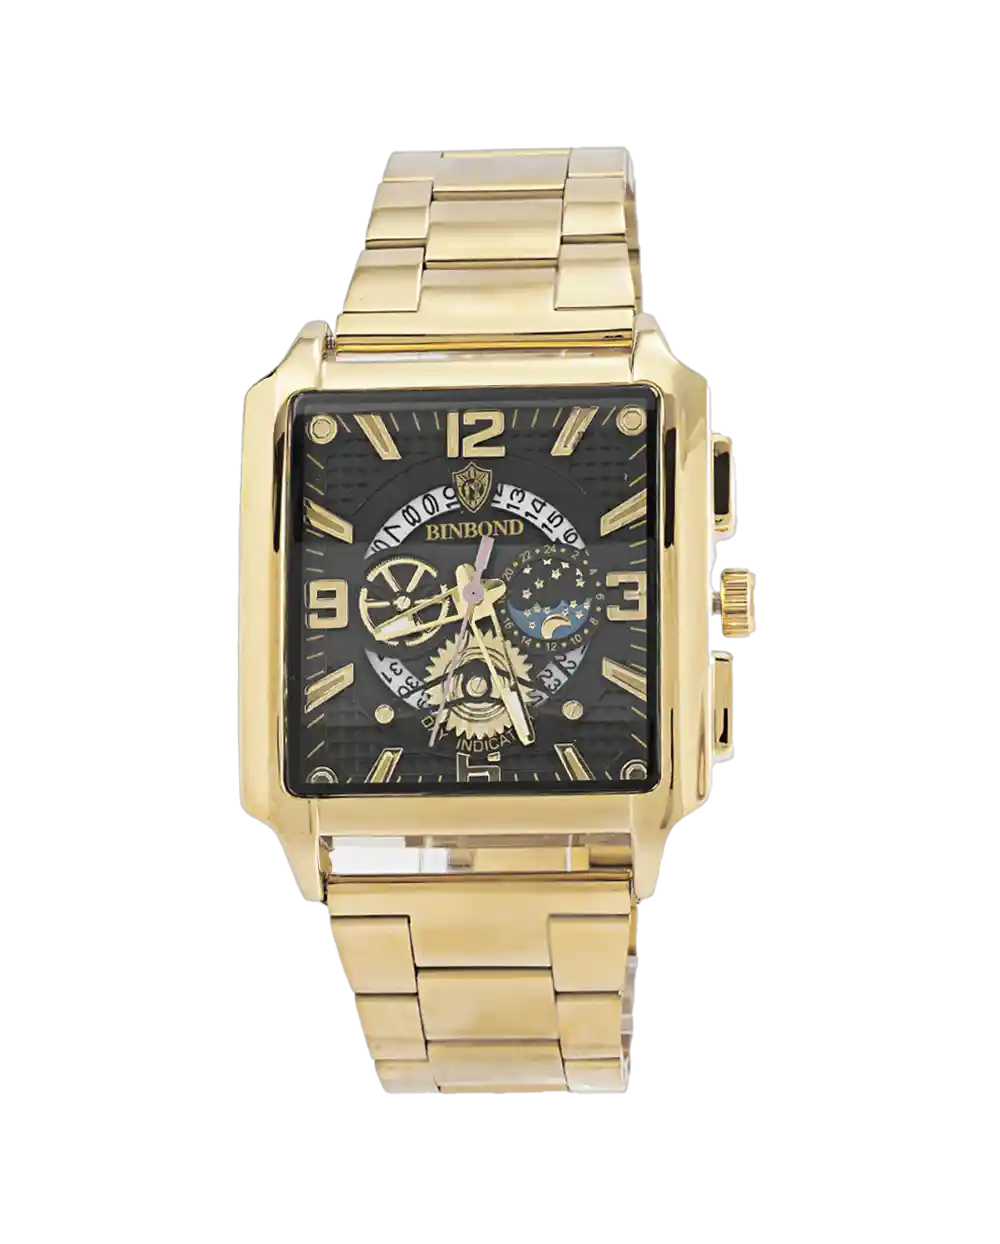 خرید ساعت مچی مردانه بین باند BIN BOND مدل 1813 رنگ طلایی قیمت 750 هزارتومان به همراه ارسال رایگان به سراسر ایران و جعبه ی ساعت کادویی